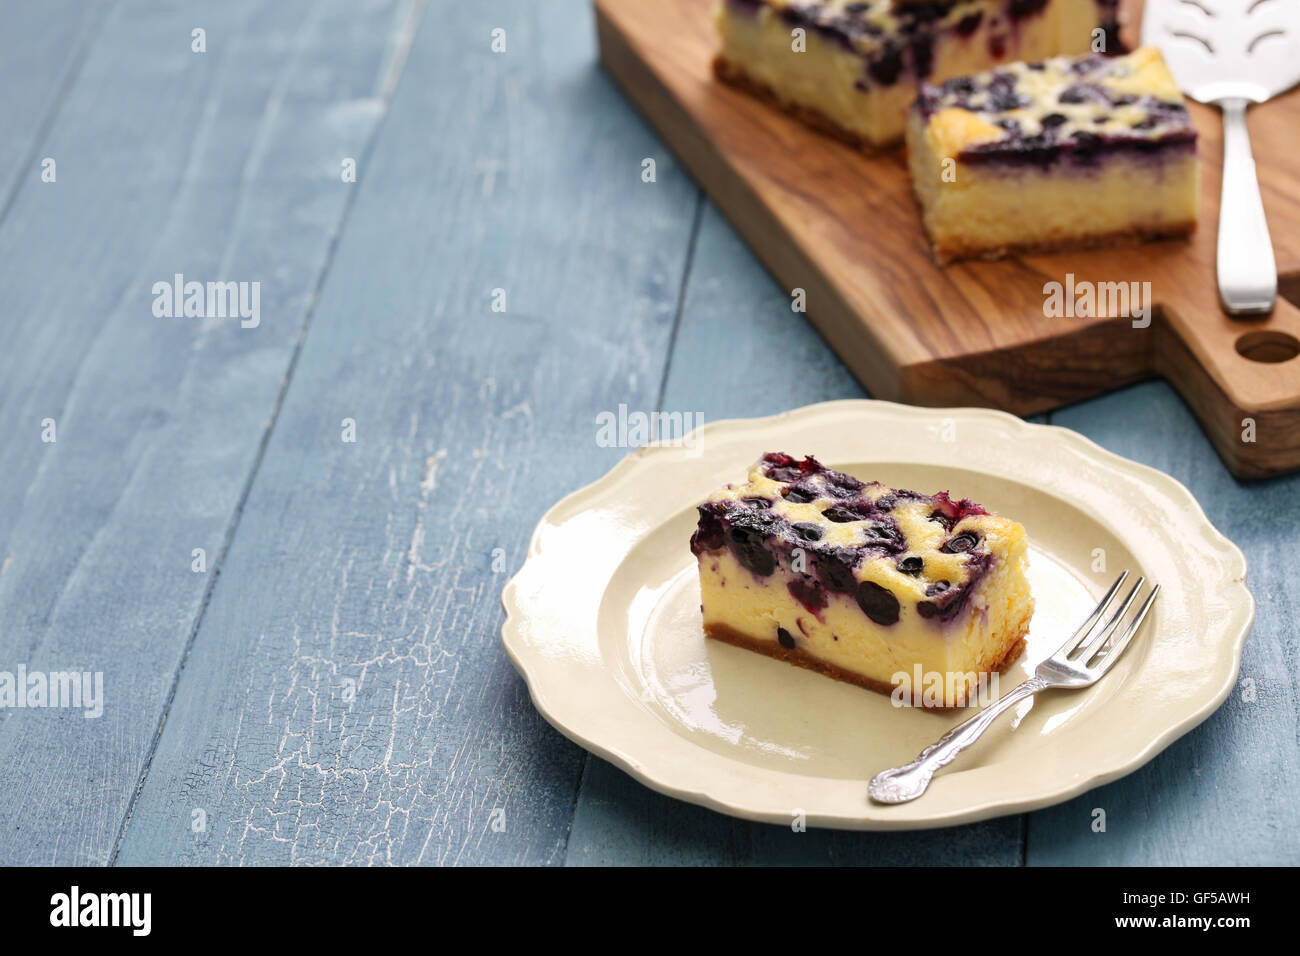 Gâteau aux bleuets, dessert maison Banque D'Images